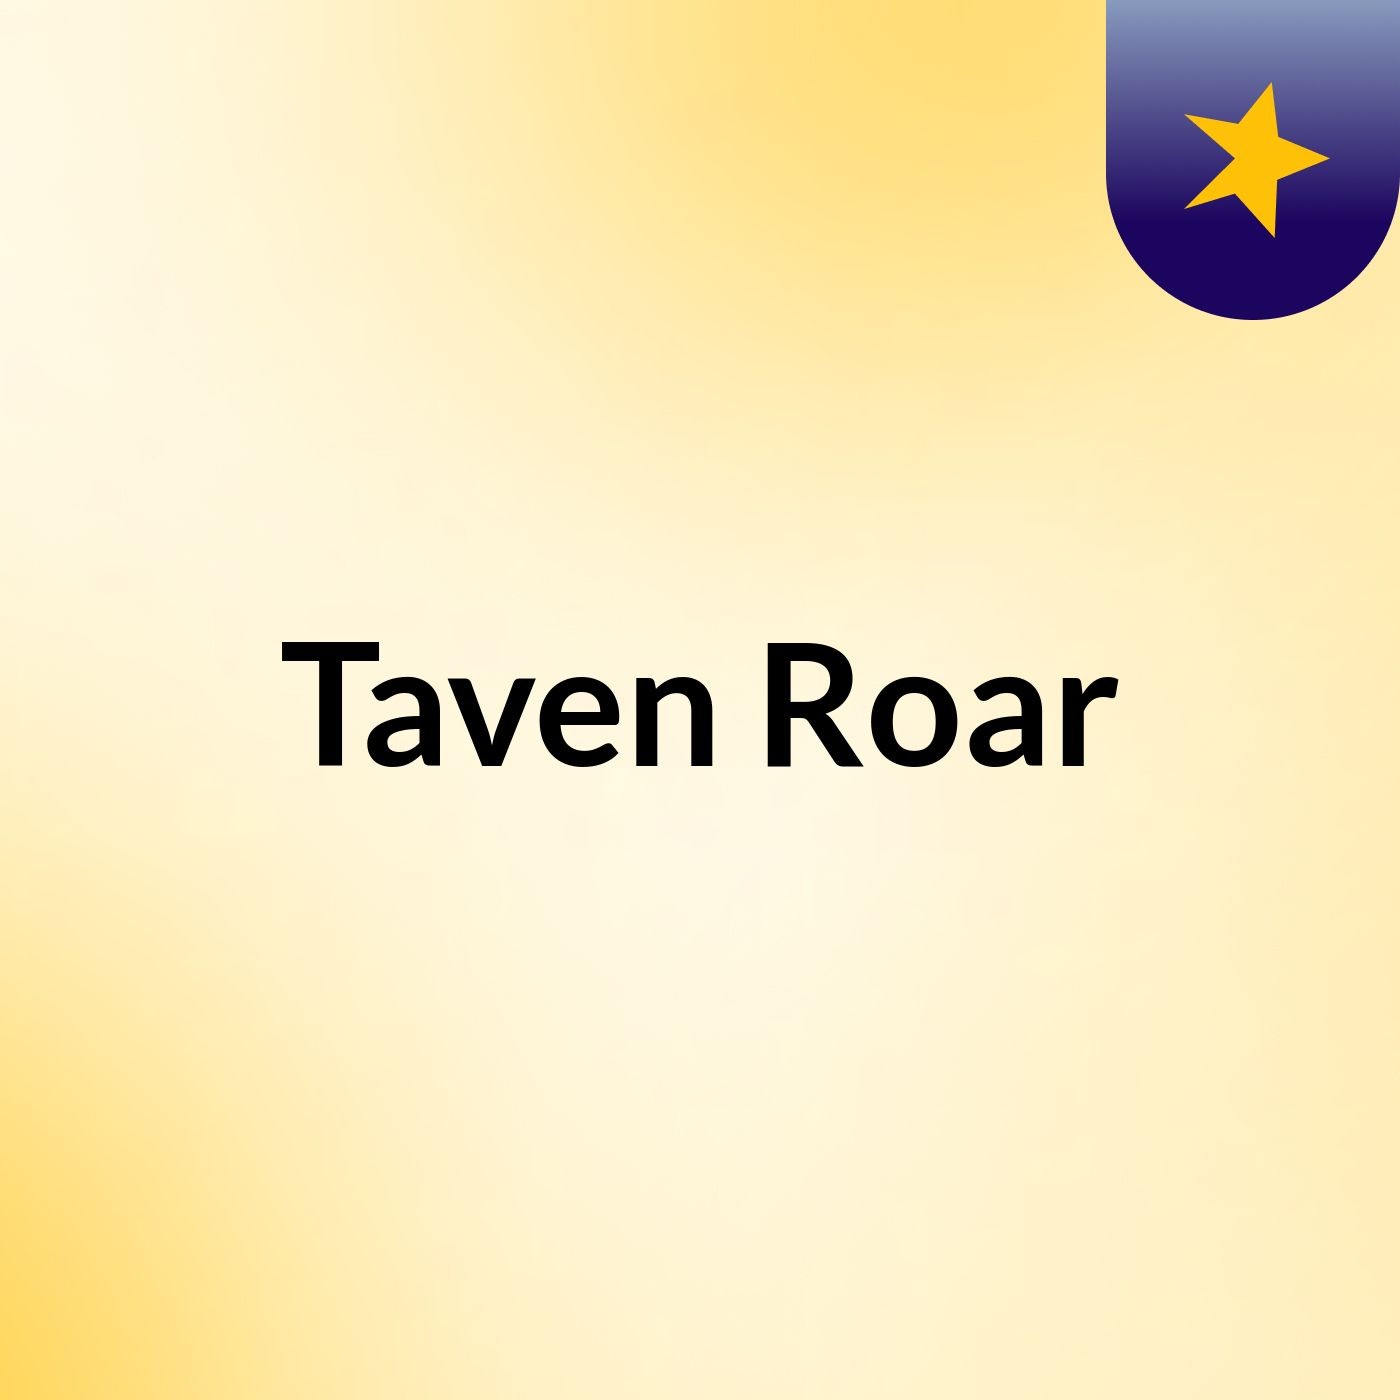 Taven Roar